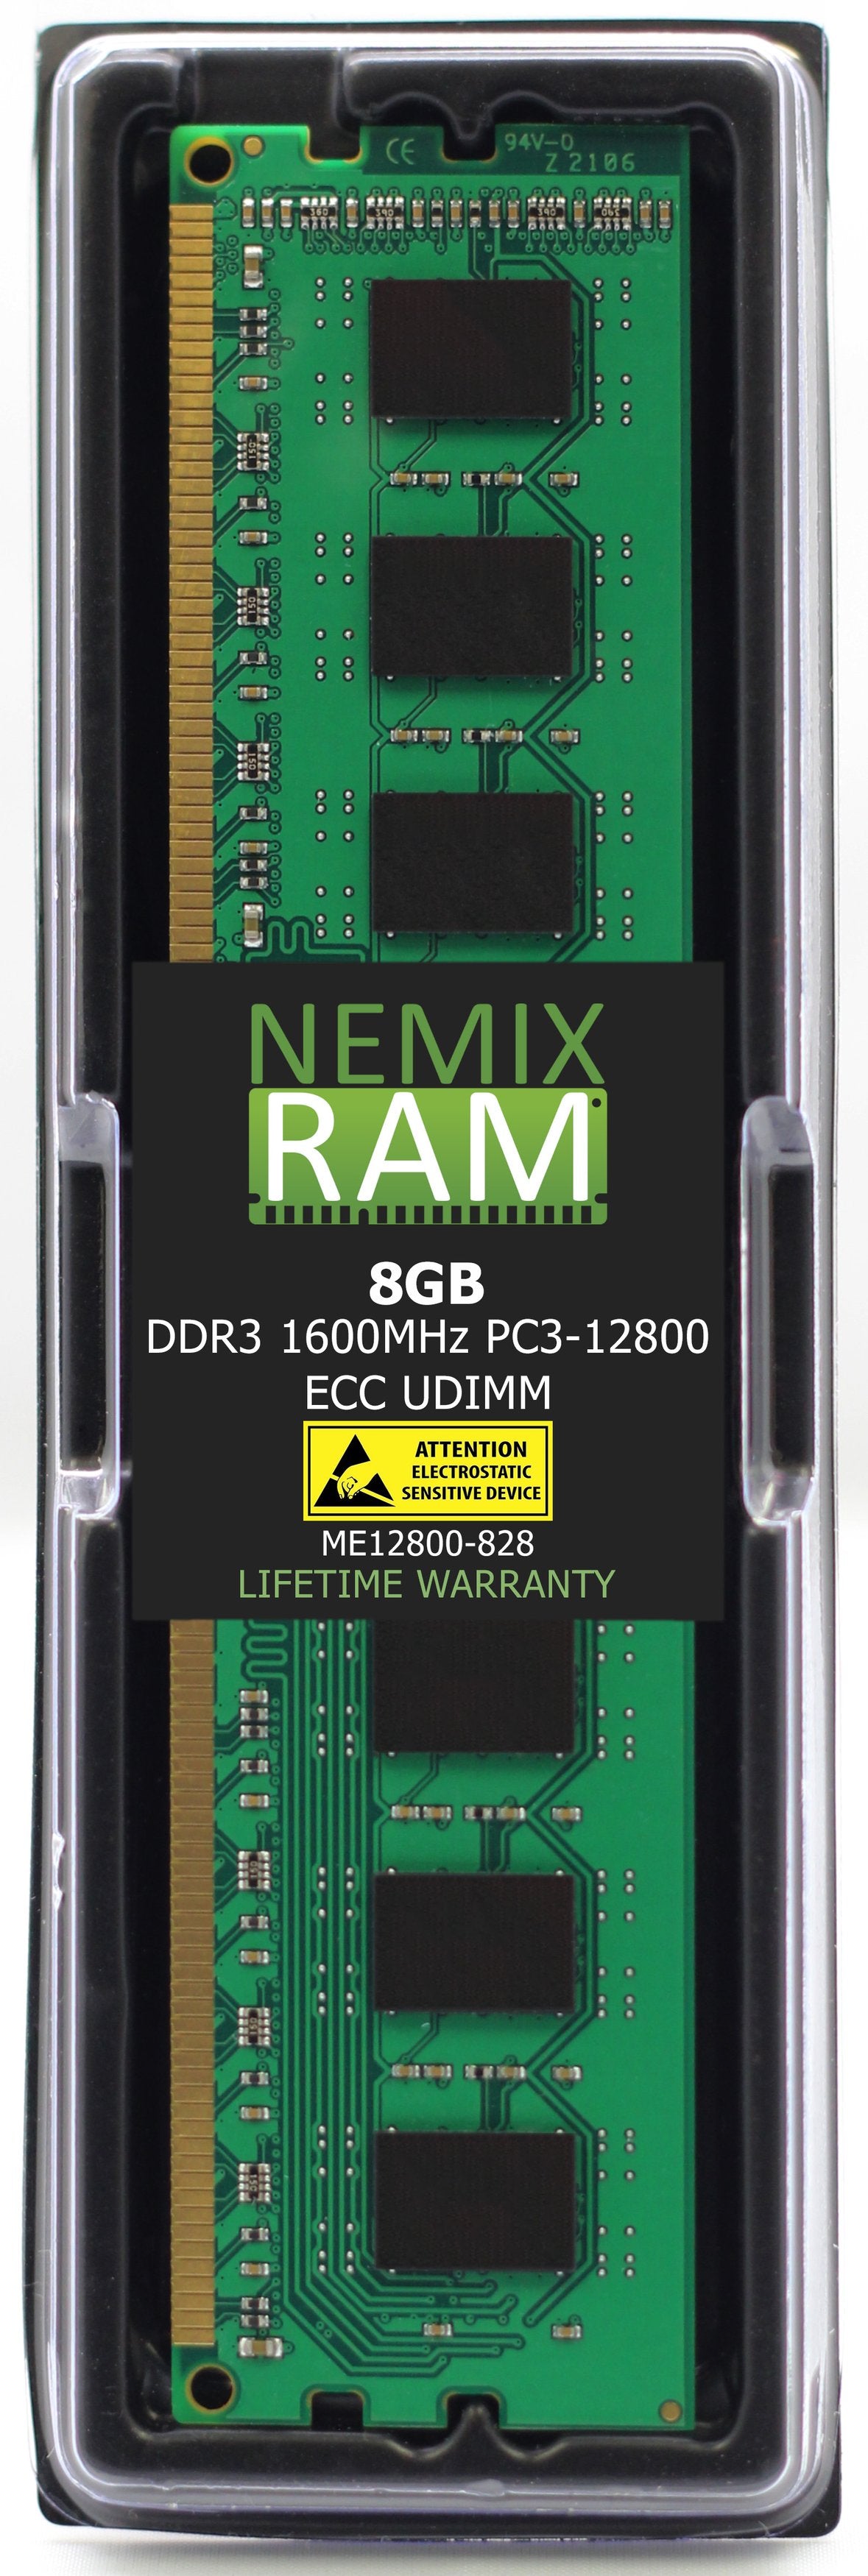 8GB DDR3 1600MHZ PC3-12800 ECC UDIMM Compatible with Supermicro MEM-DR380L-HL01-EU16